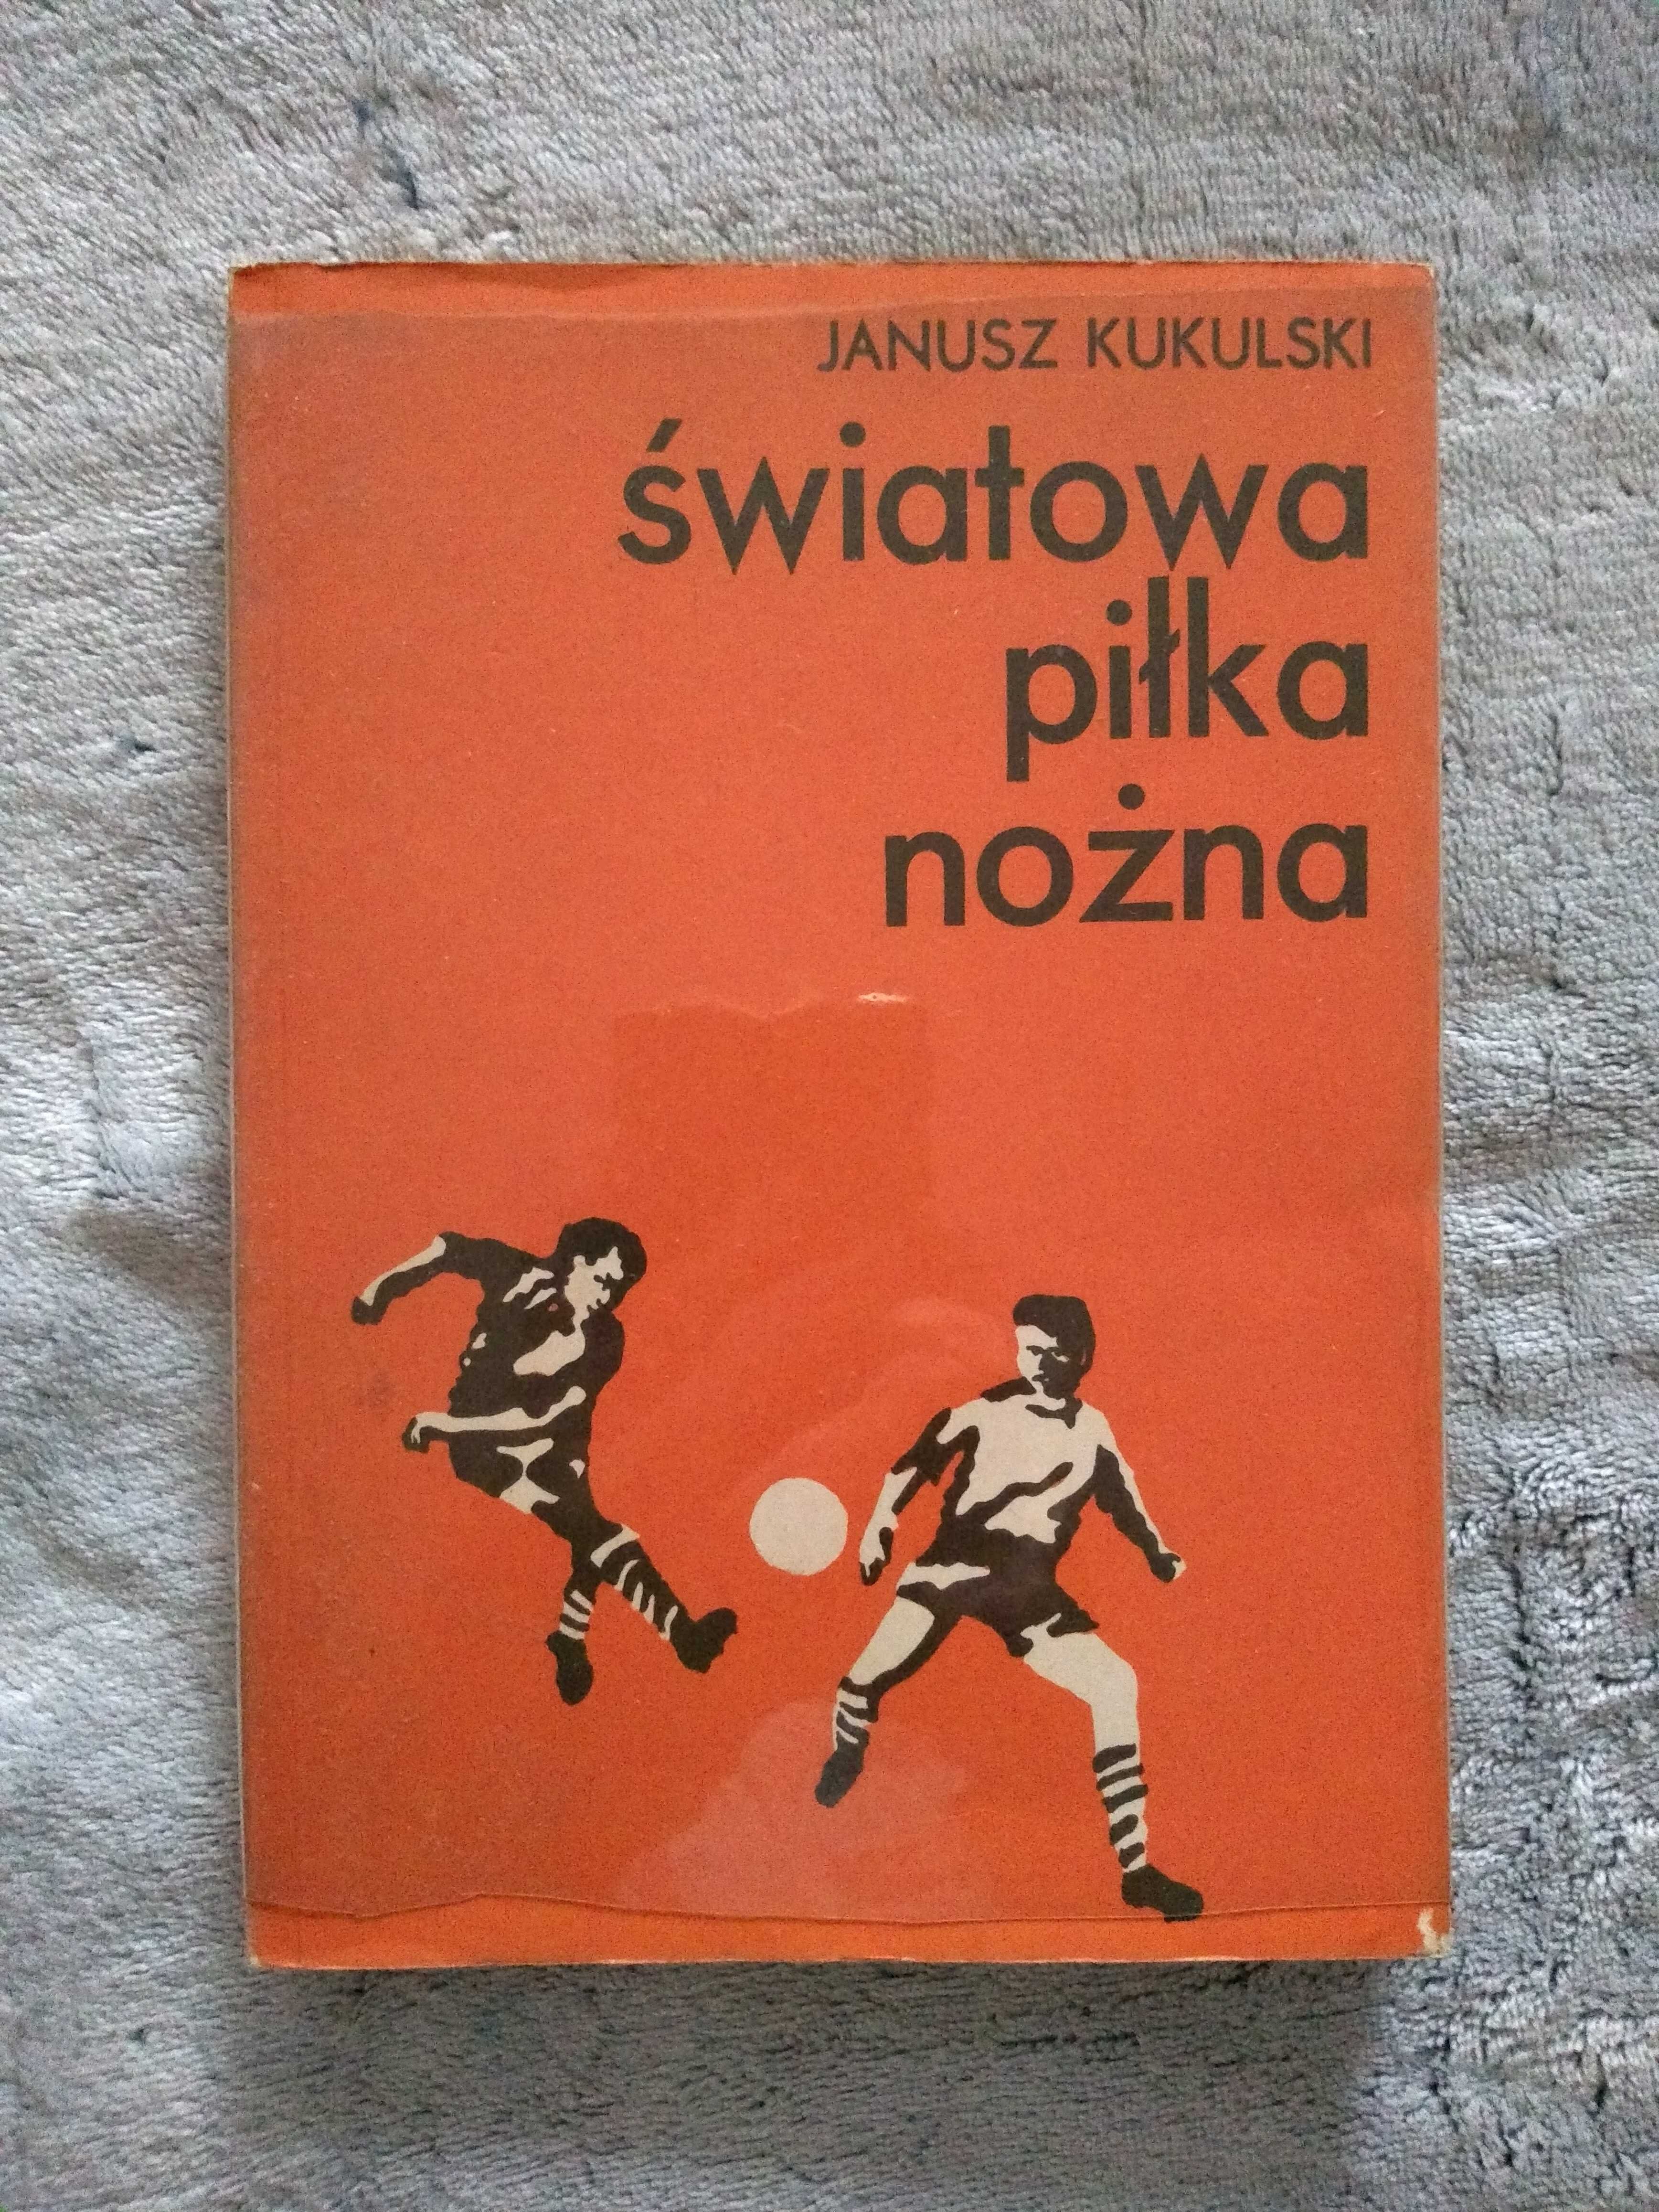 Książka "Światowa piłka nożna" Janusz Kukulski, 79 rok